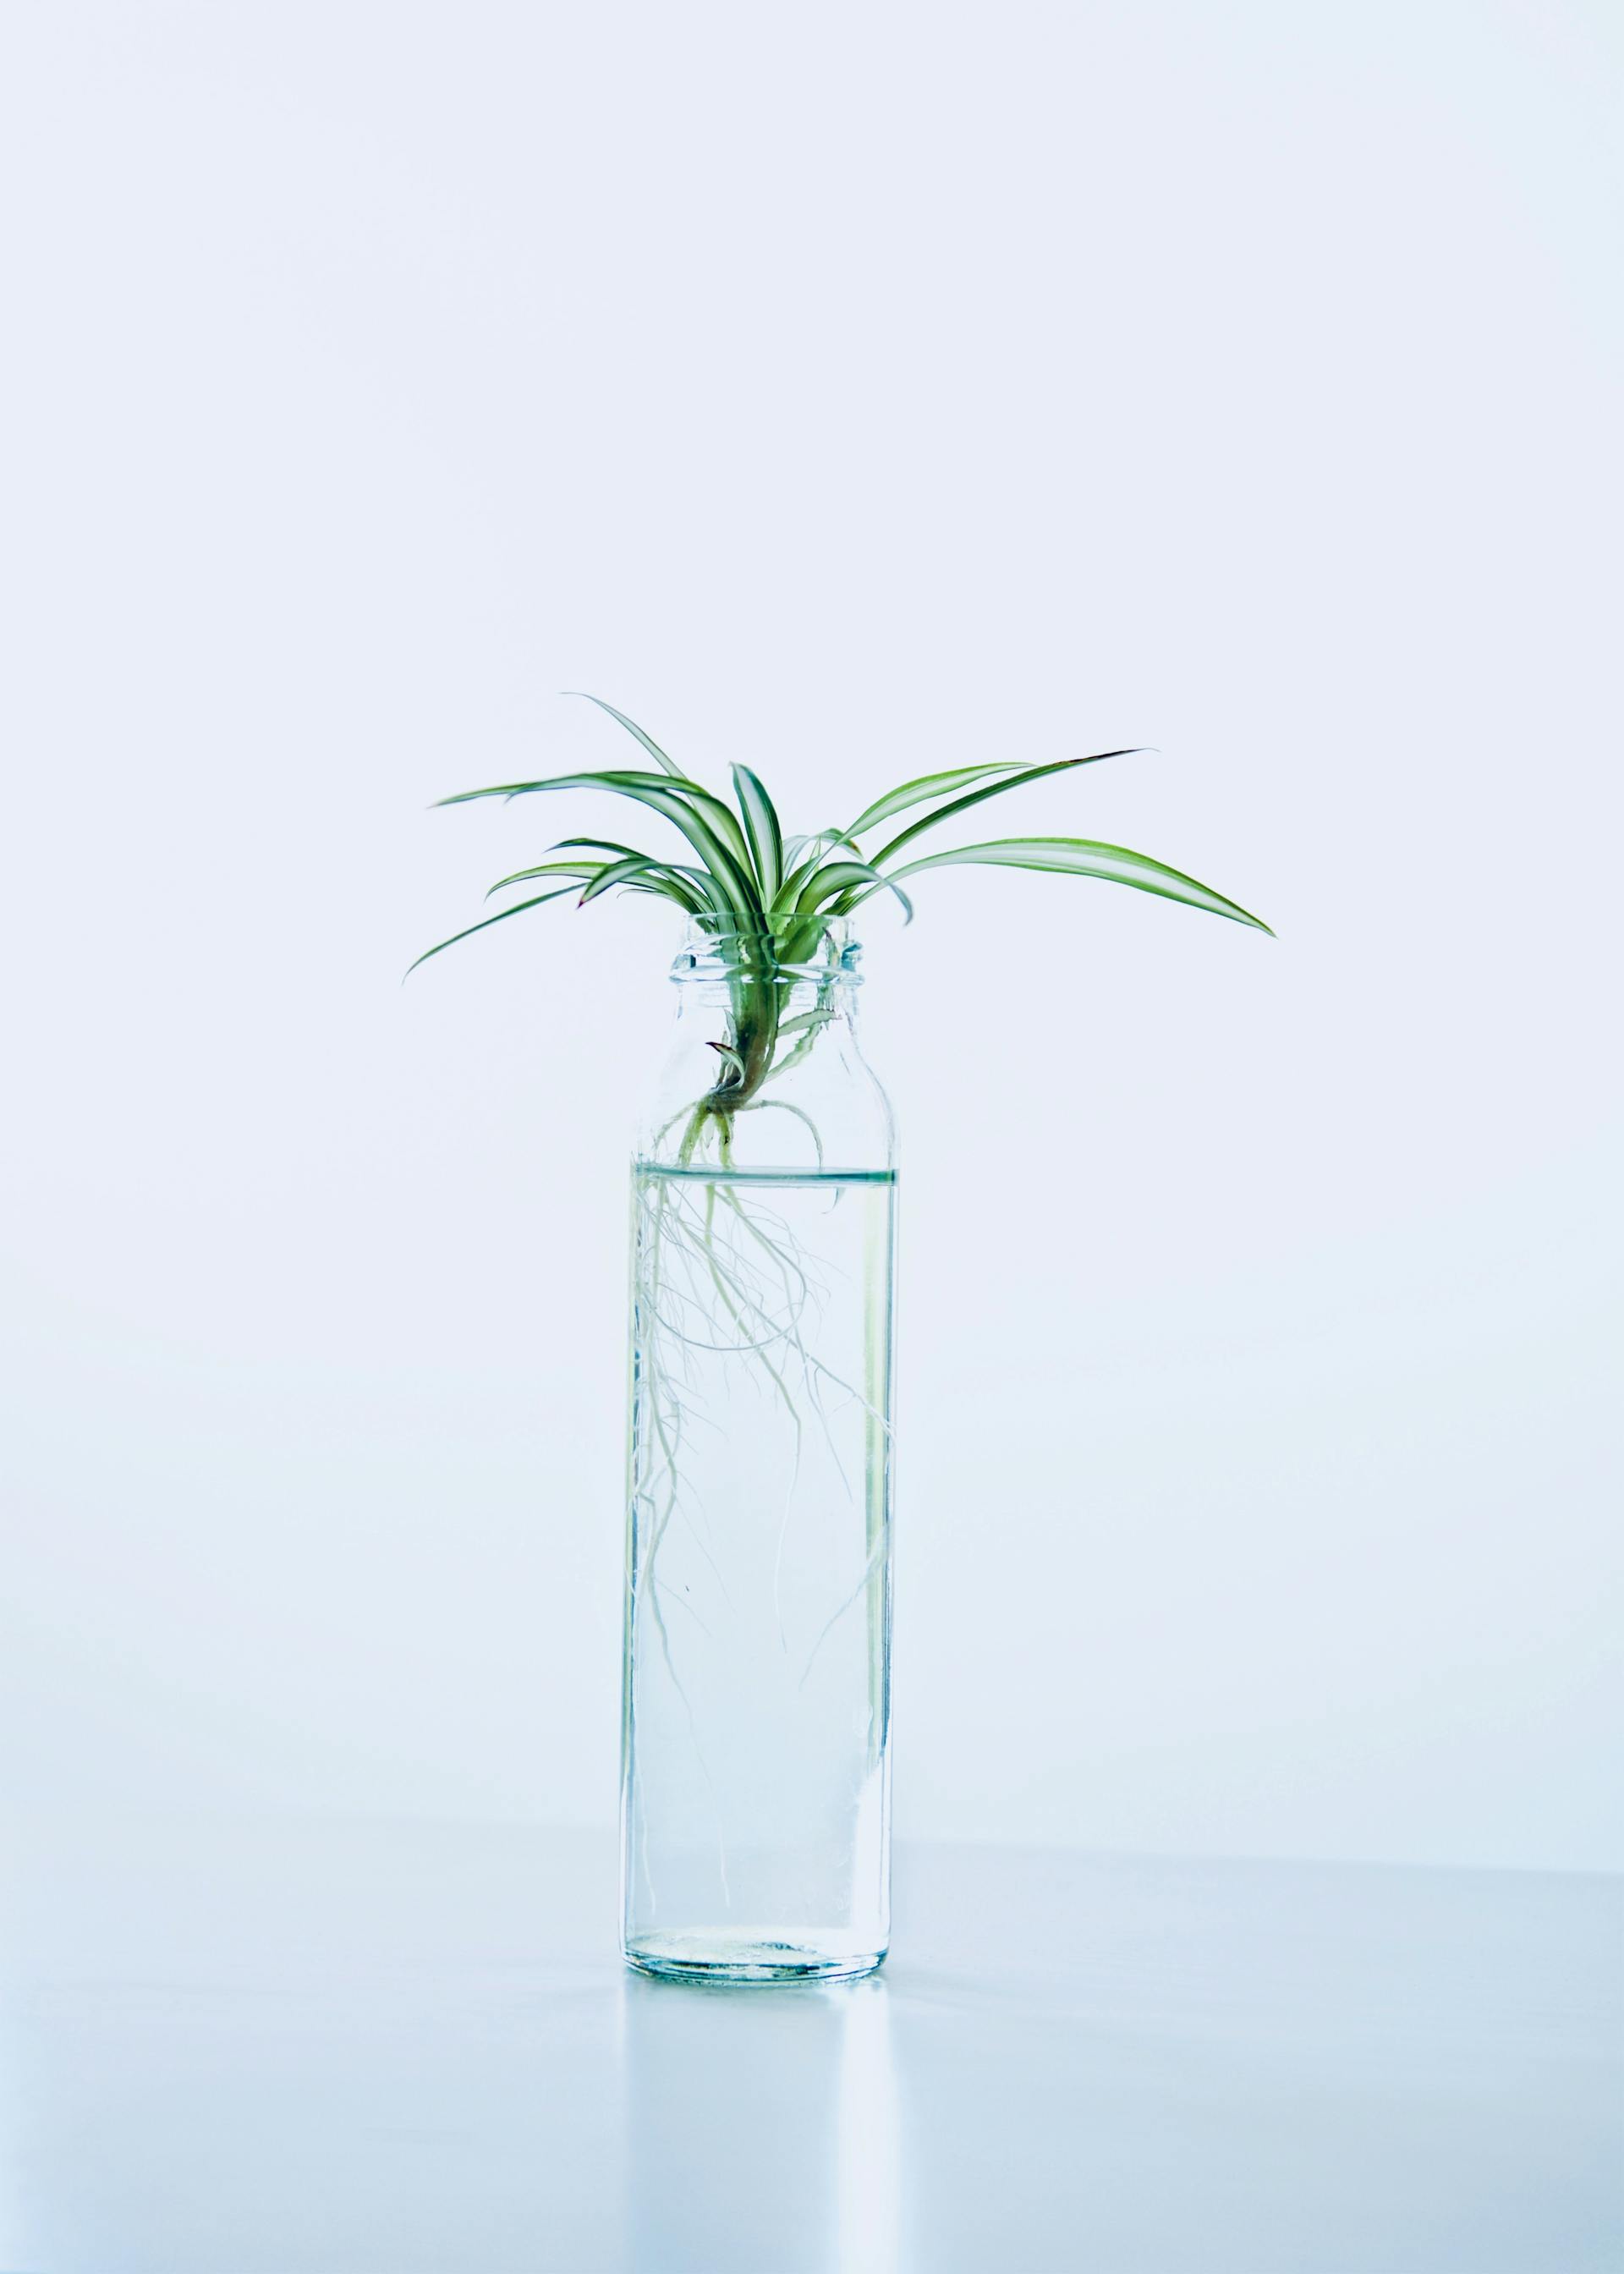 Eine Grünpflanze in einer Glasflasche mit Wasser | Quelle: Pexels